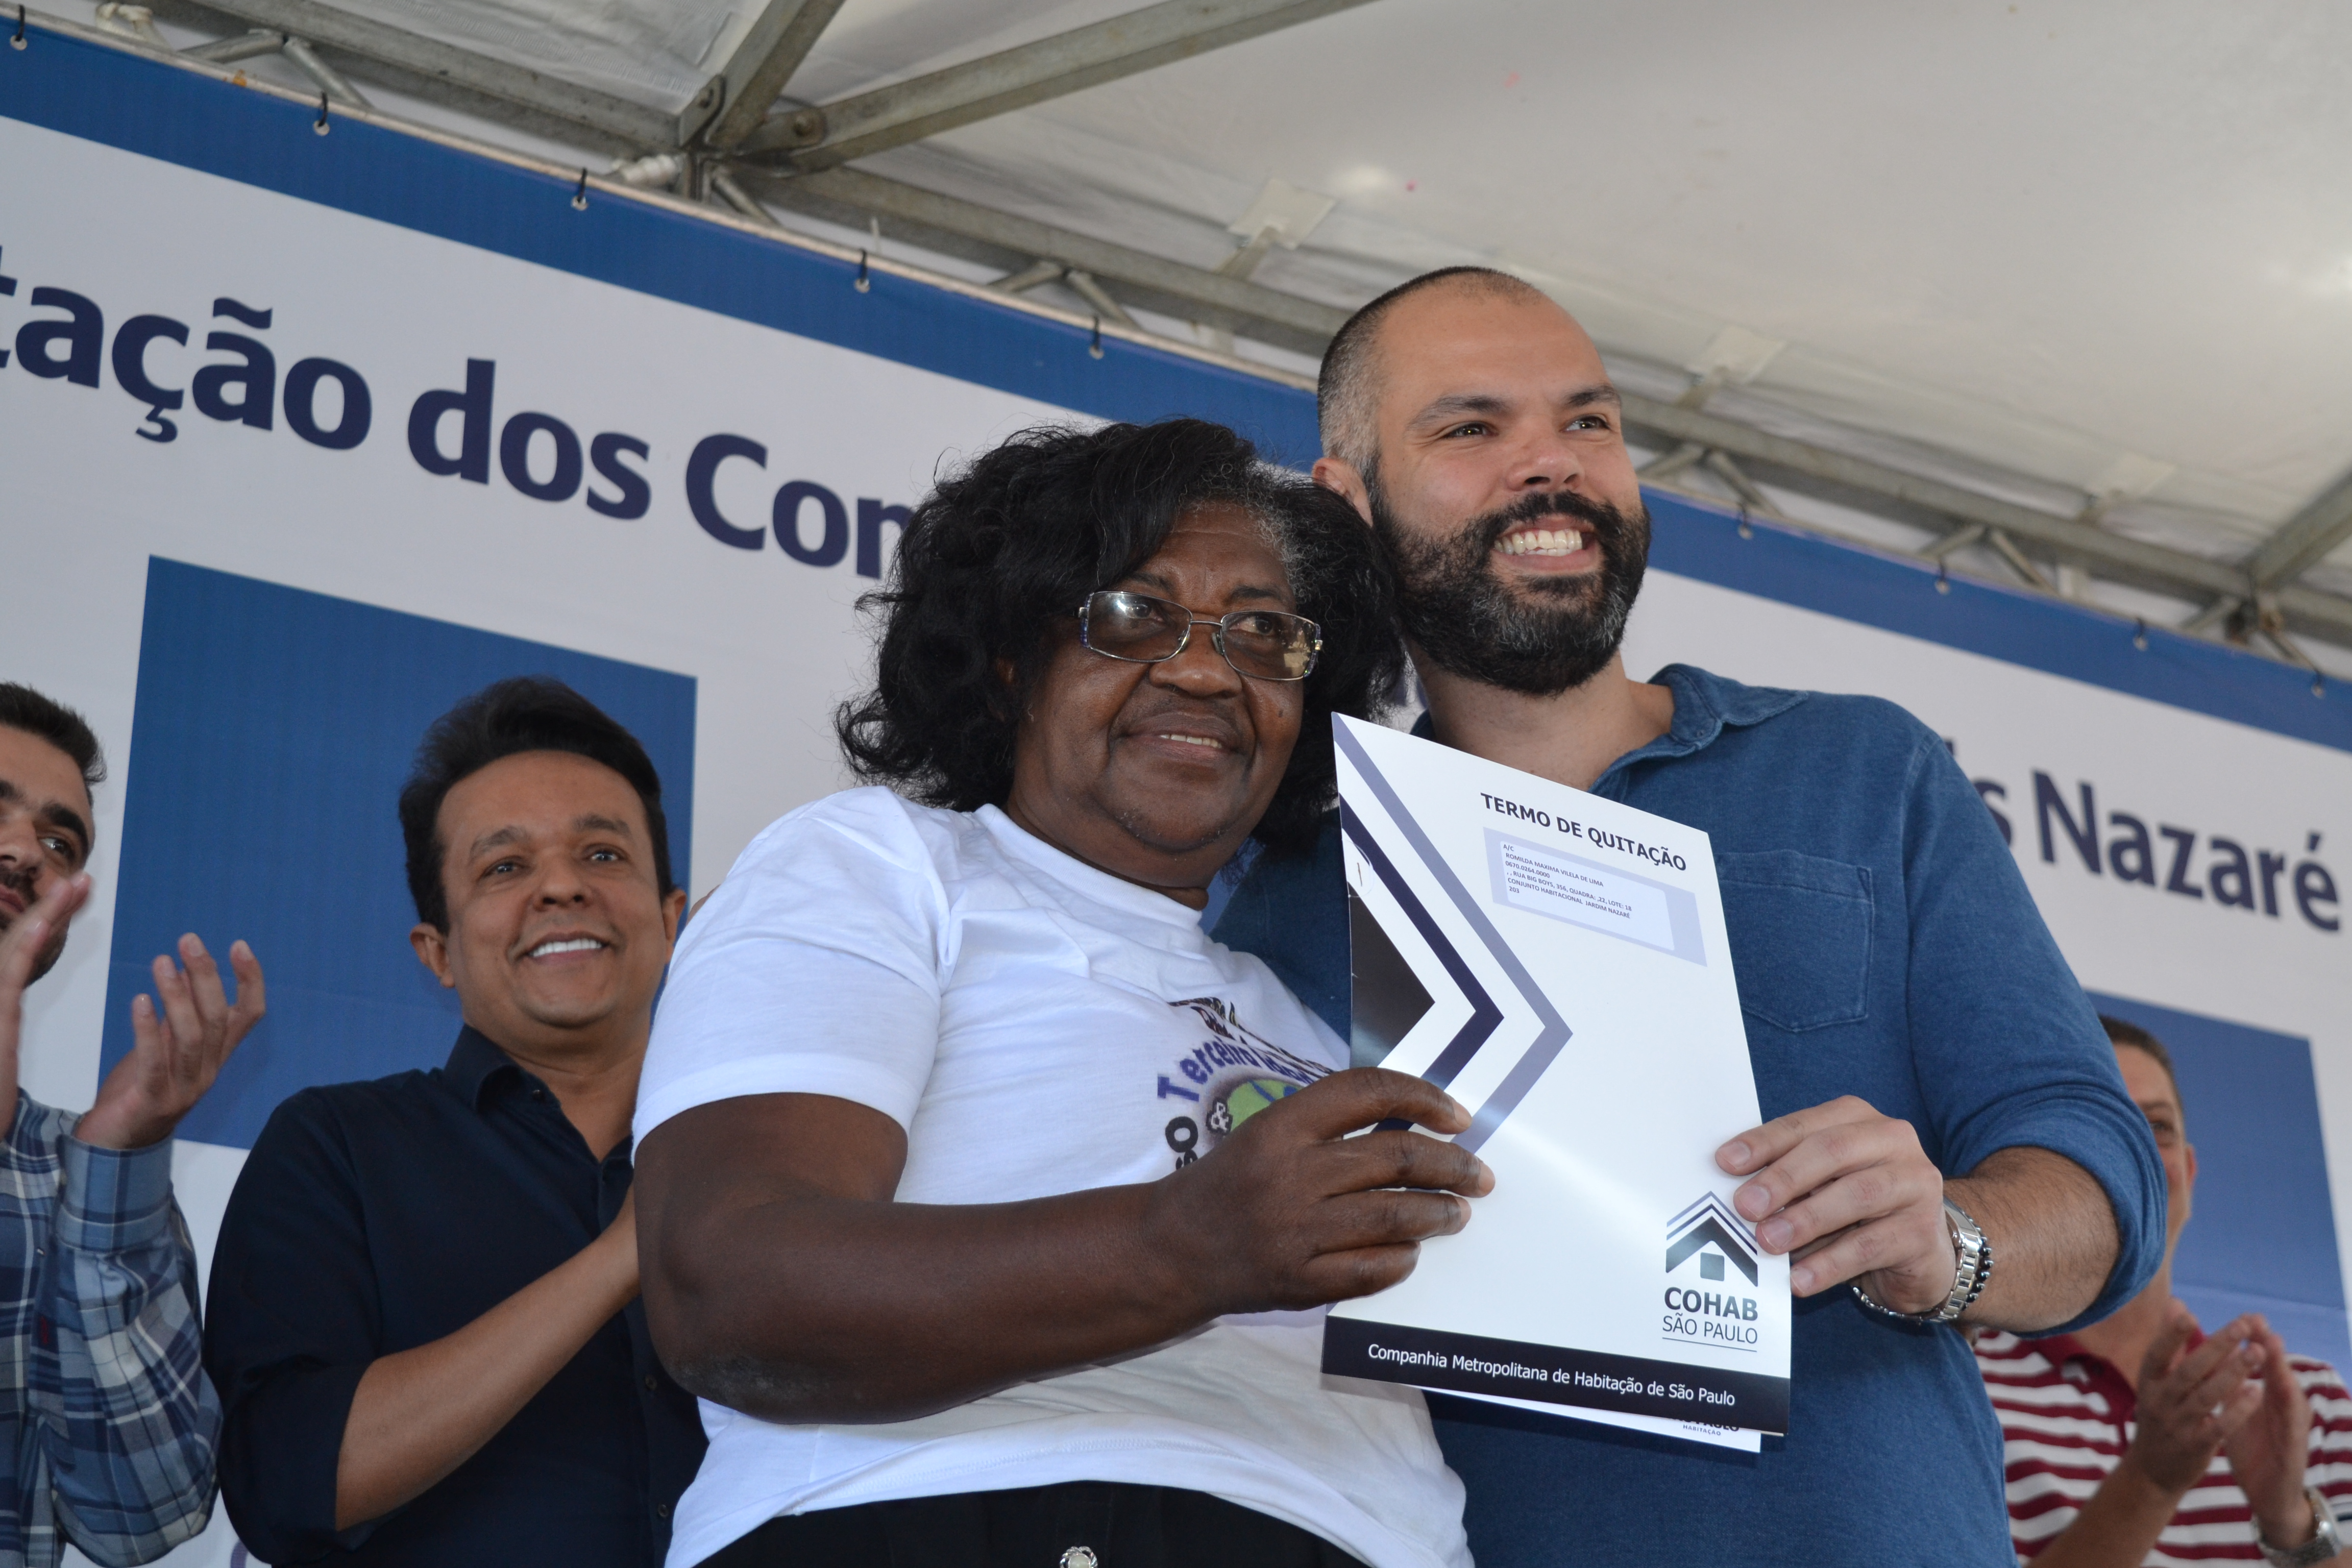 Na foto está o prefeito Bruno Covas com a moradora Romilda segurando o termo de quitação da Cohab. Ao fundo tem algumas autoridades da prefeitura aplaudindo.